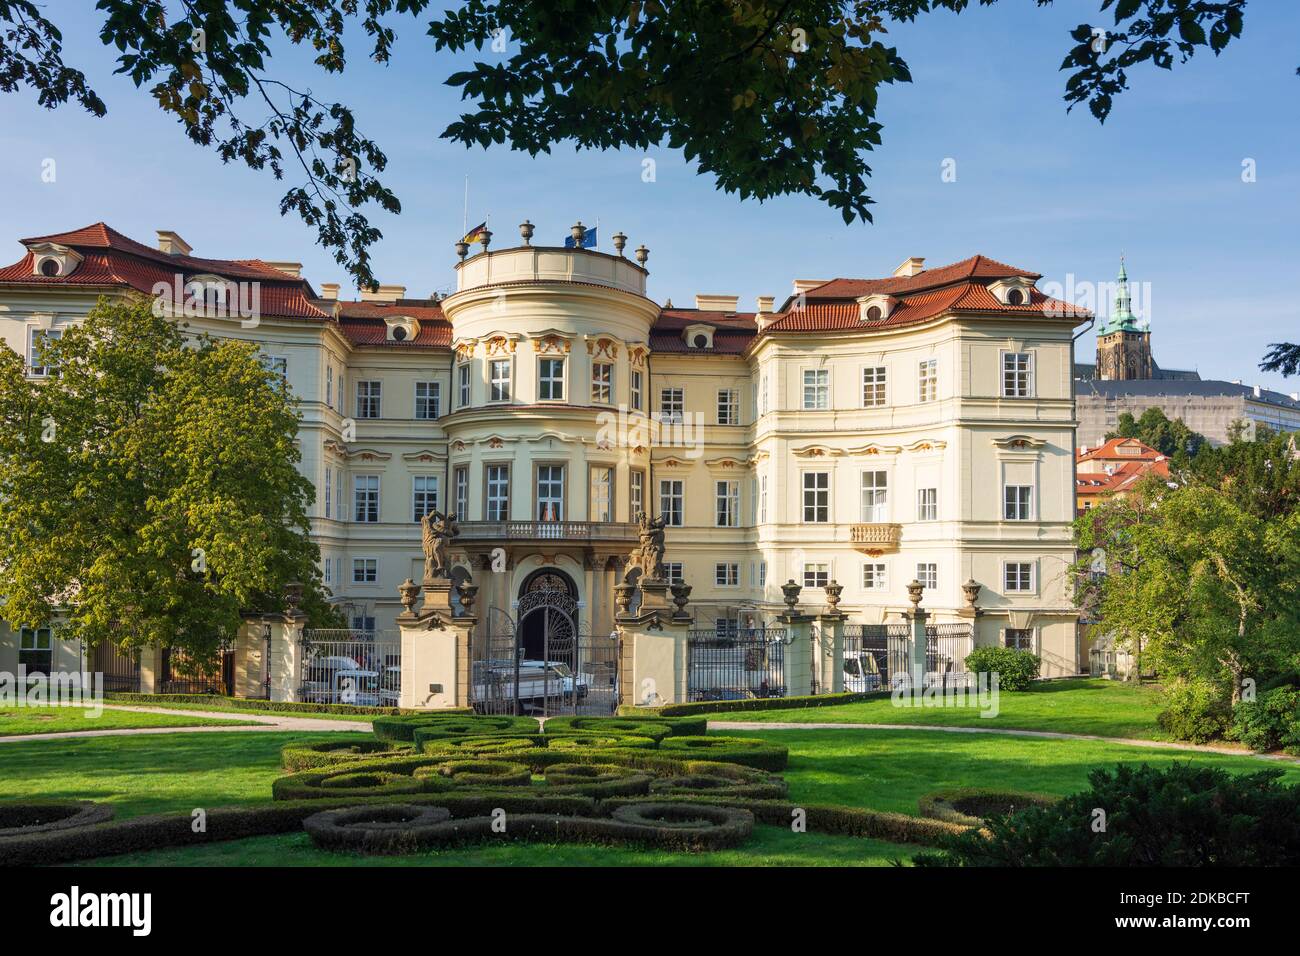 Praha, Palazzo del Palais Lobkowicz, oggi Ambasciata della Germania, giardino in cui i rifugiati della Germania dell'Est stavano campeggiando a Mala Strana, Lesser Town, Praha, Prag, Praga, Ceco Foto Stock